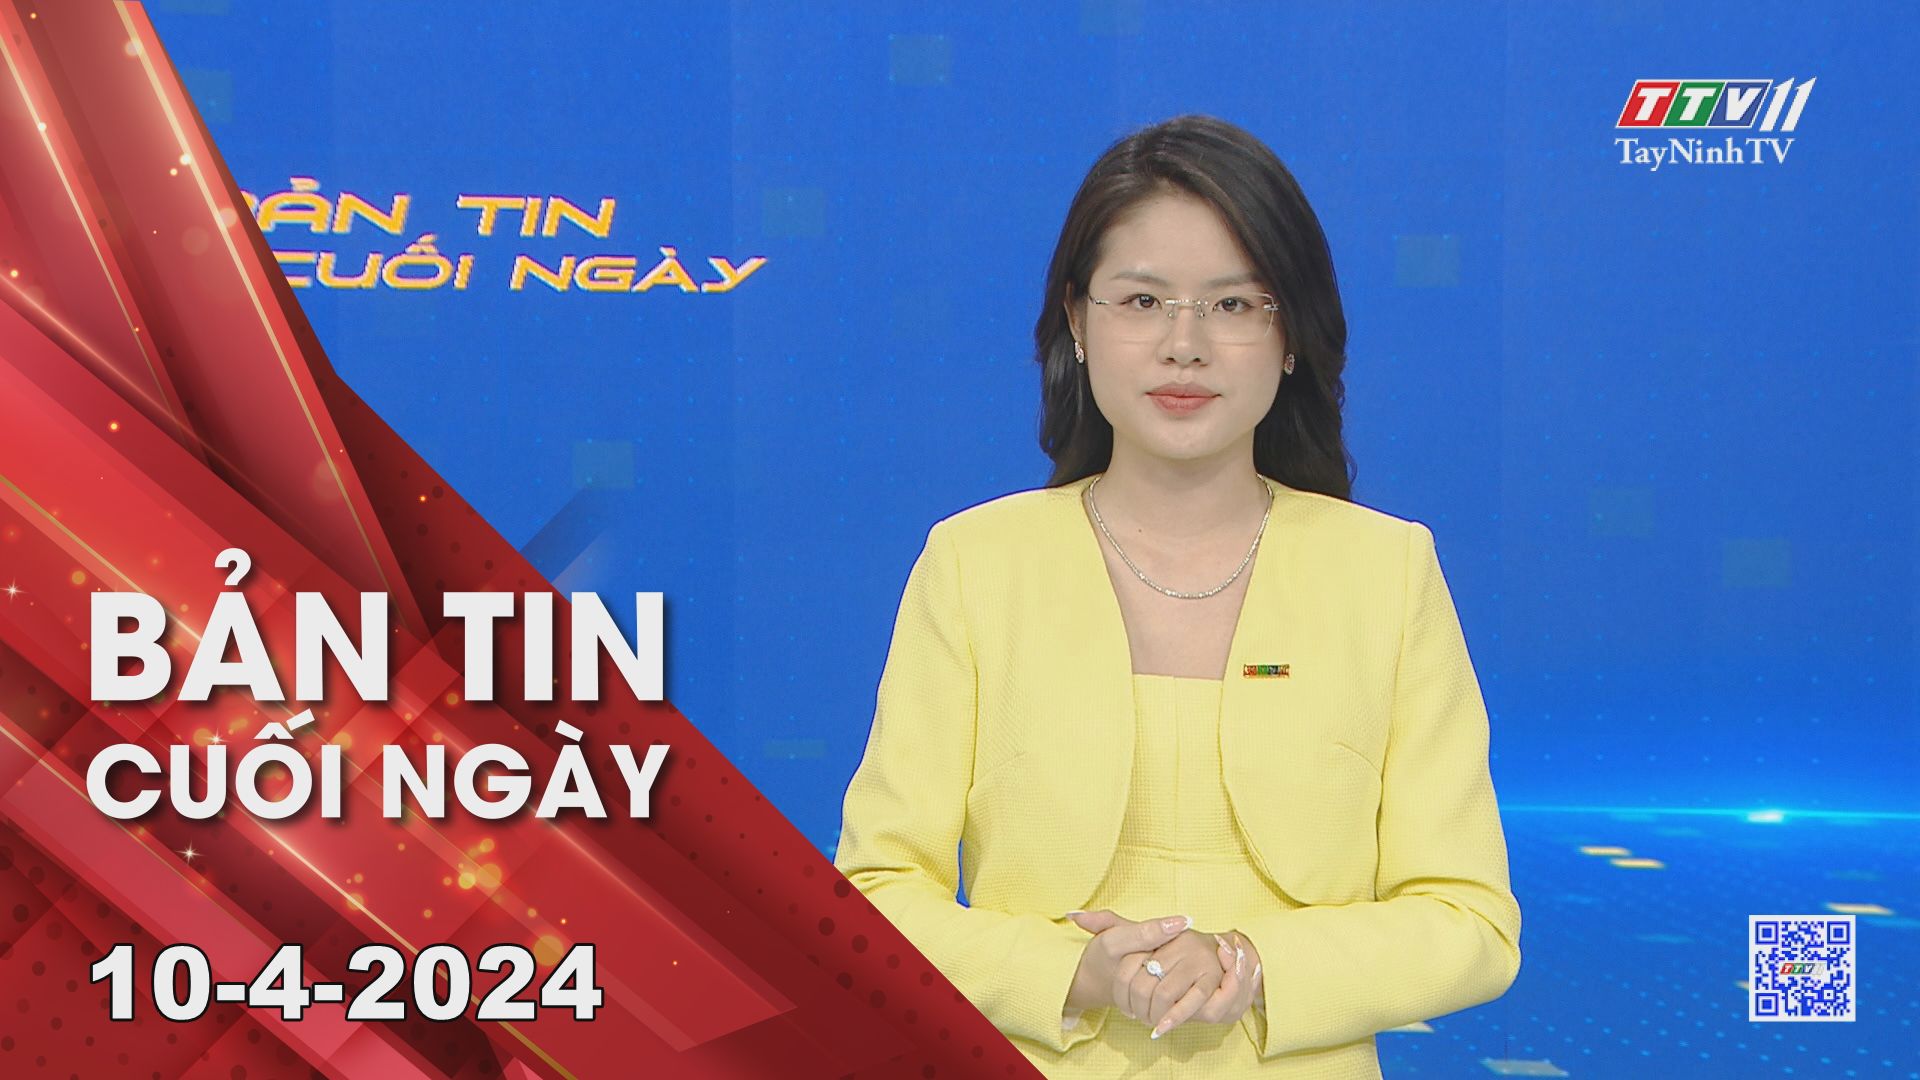 Bản tin cuối ngày 10-4-2024 | Tin tức hôm nay | TayNinhTV